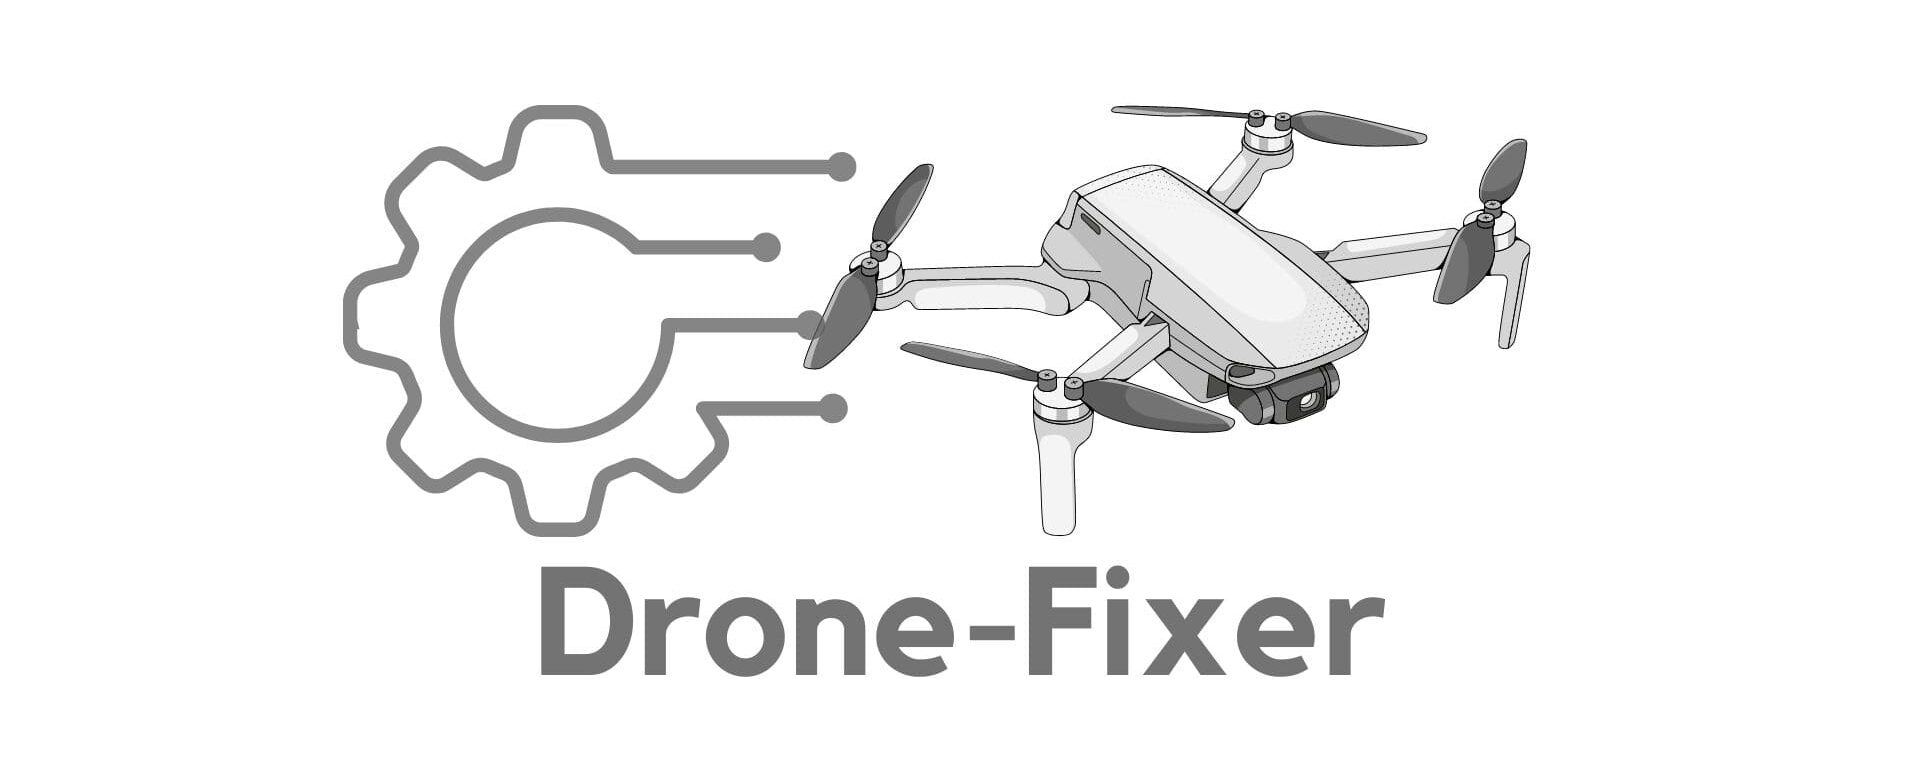 drone-fixer